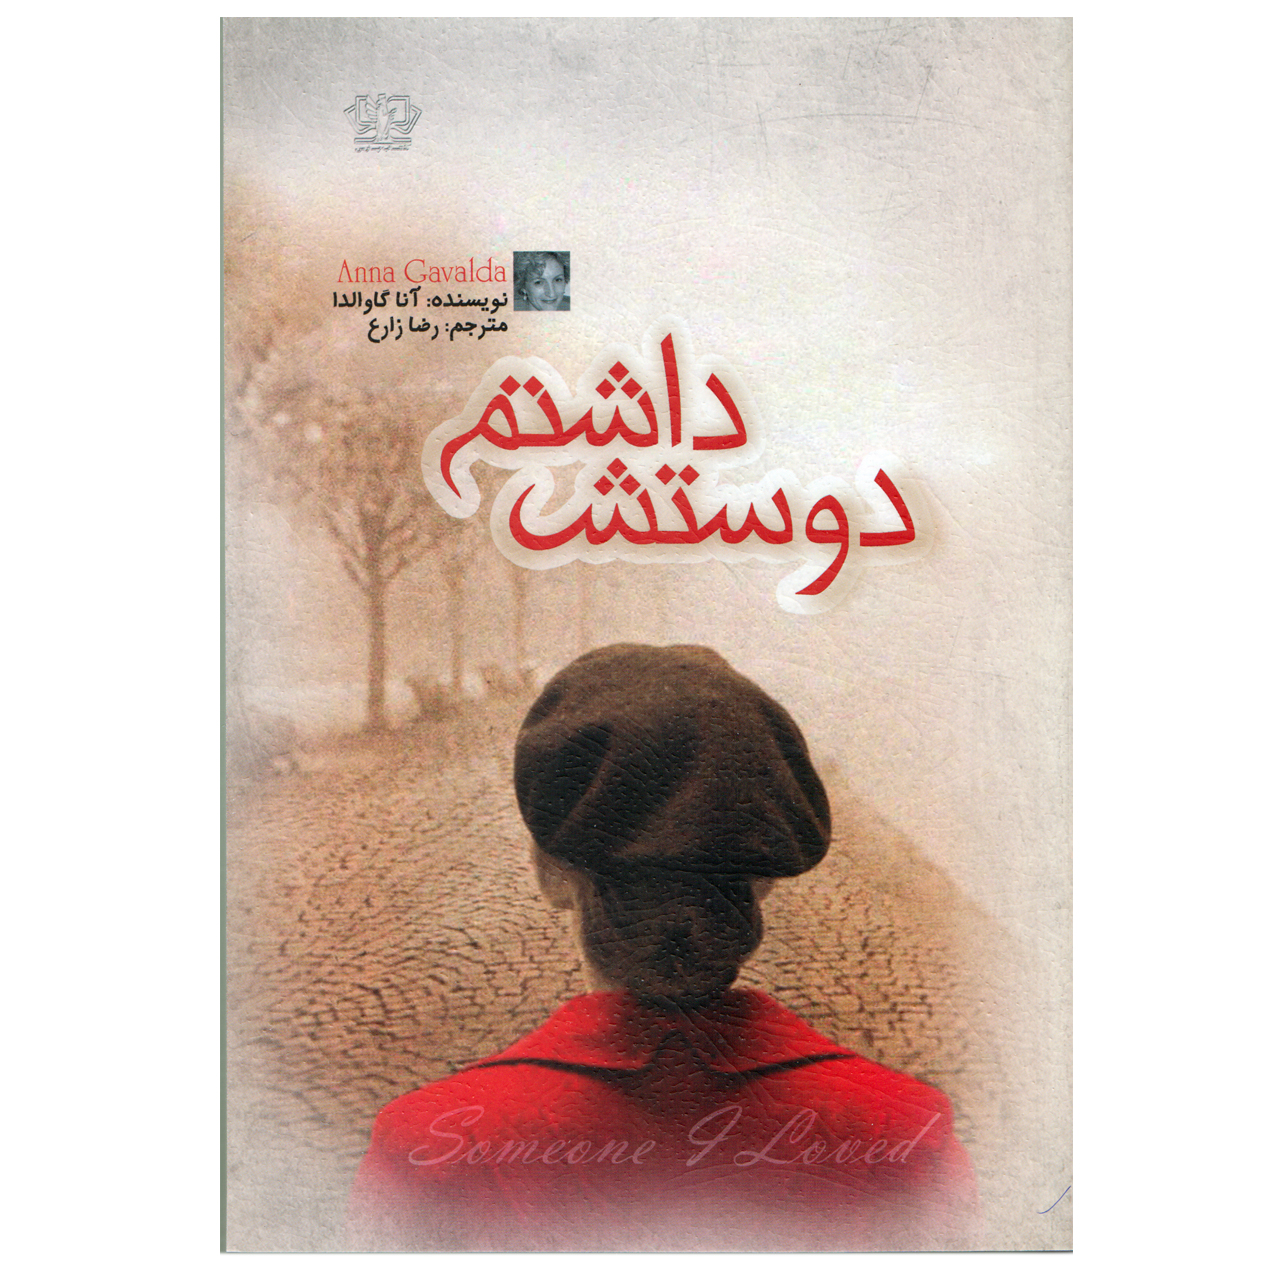 آنباکس کتاب دوستش داشتم اثر آنا گاوالدا نشر کتاب پارس توسط tahere bakhshi در تاریخ ۱۹ مرداد ۱۴۰۰